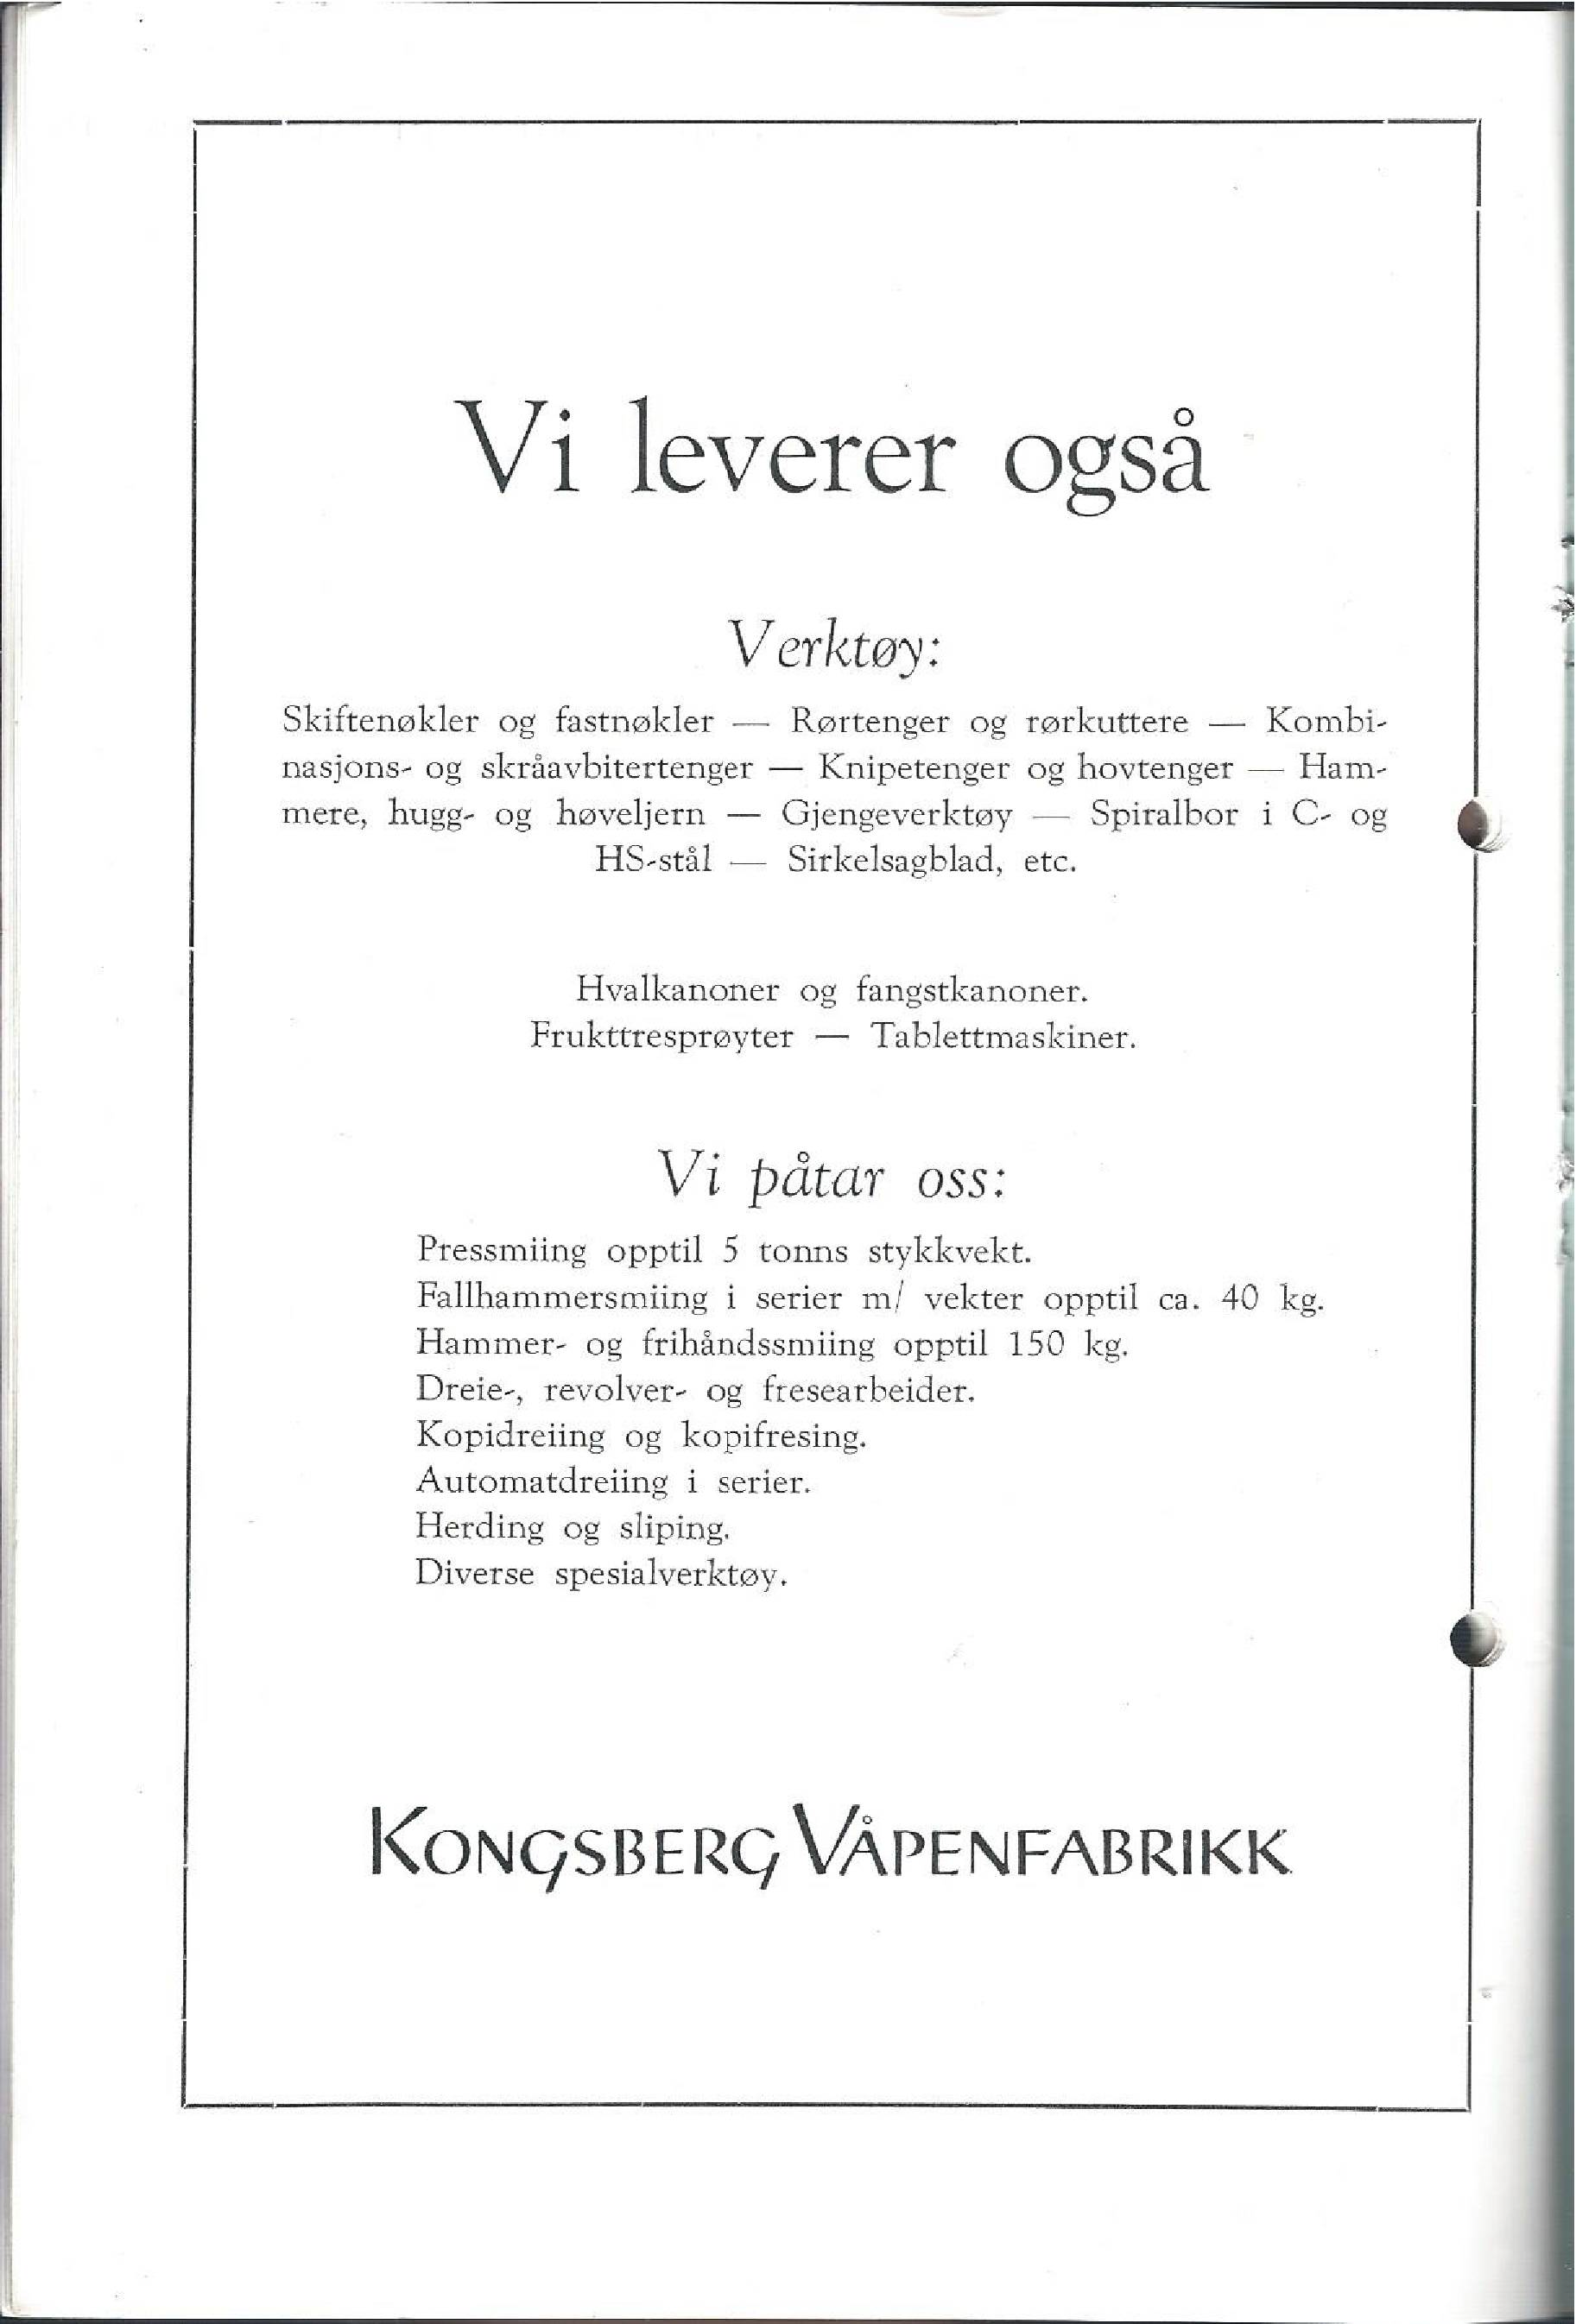 ./doc/KV/KV-Katalog-Illustrert-Vaapendeler-18.jpg